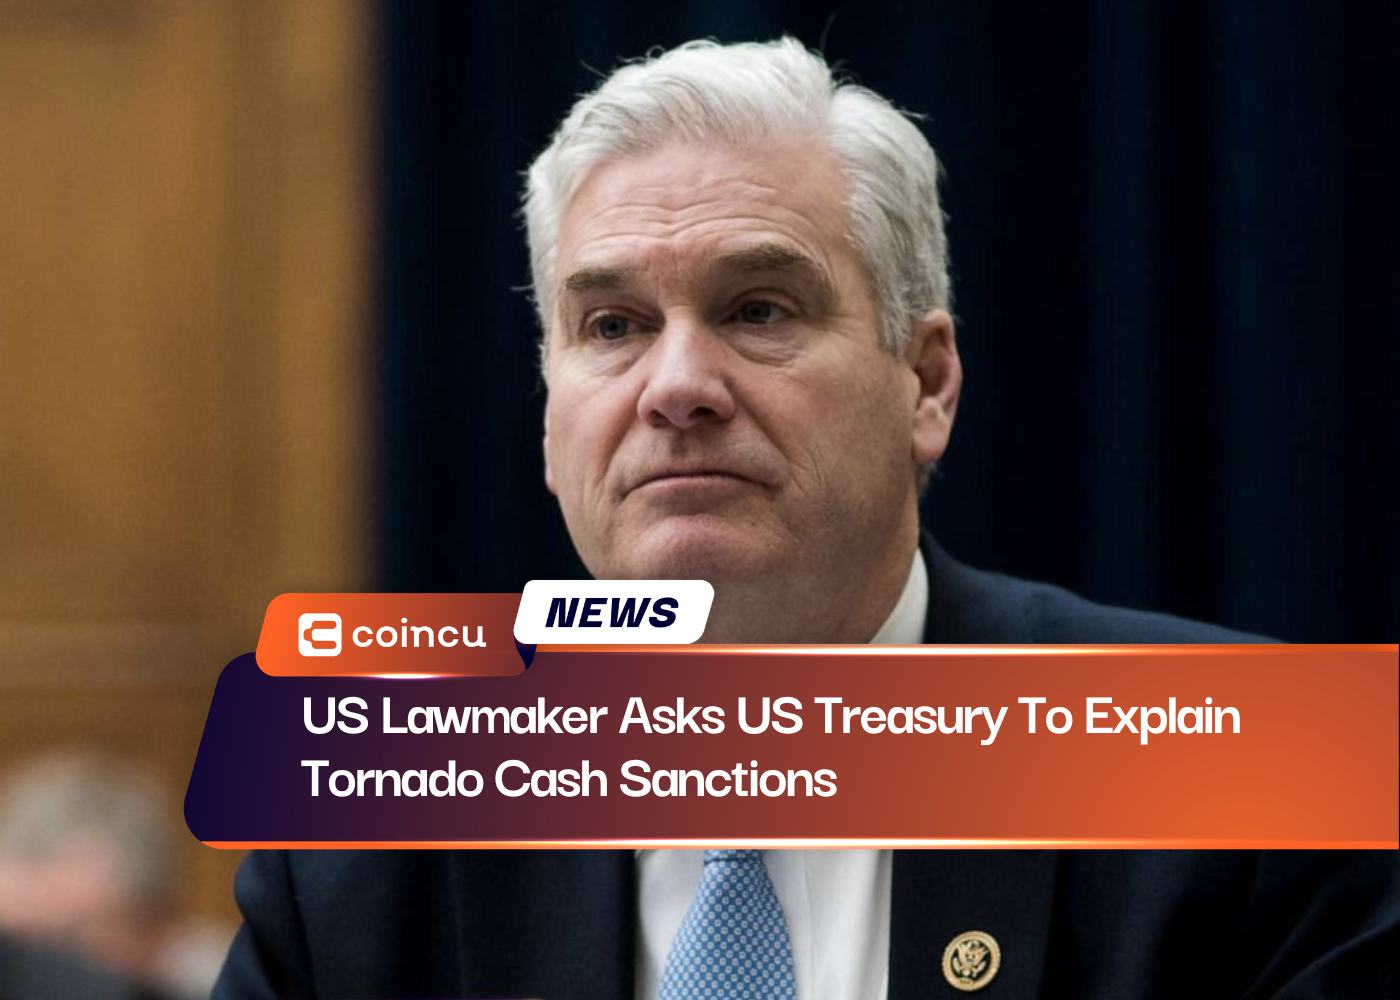 Legislador dos EUA pede ao Tesouro dos EUA que explique as sanções em dinheiro do Tornado